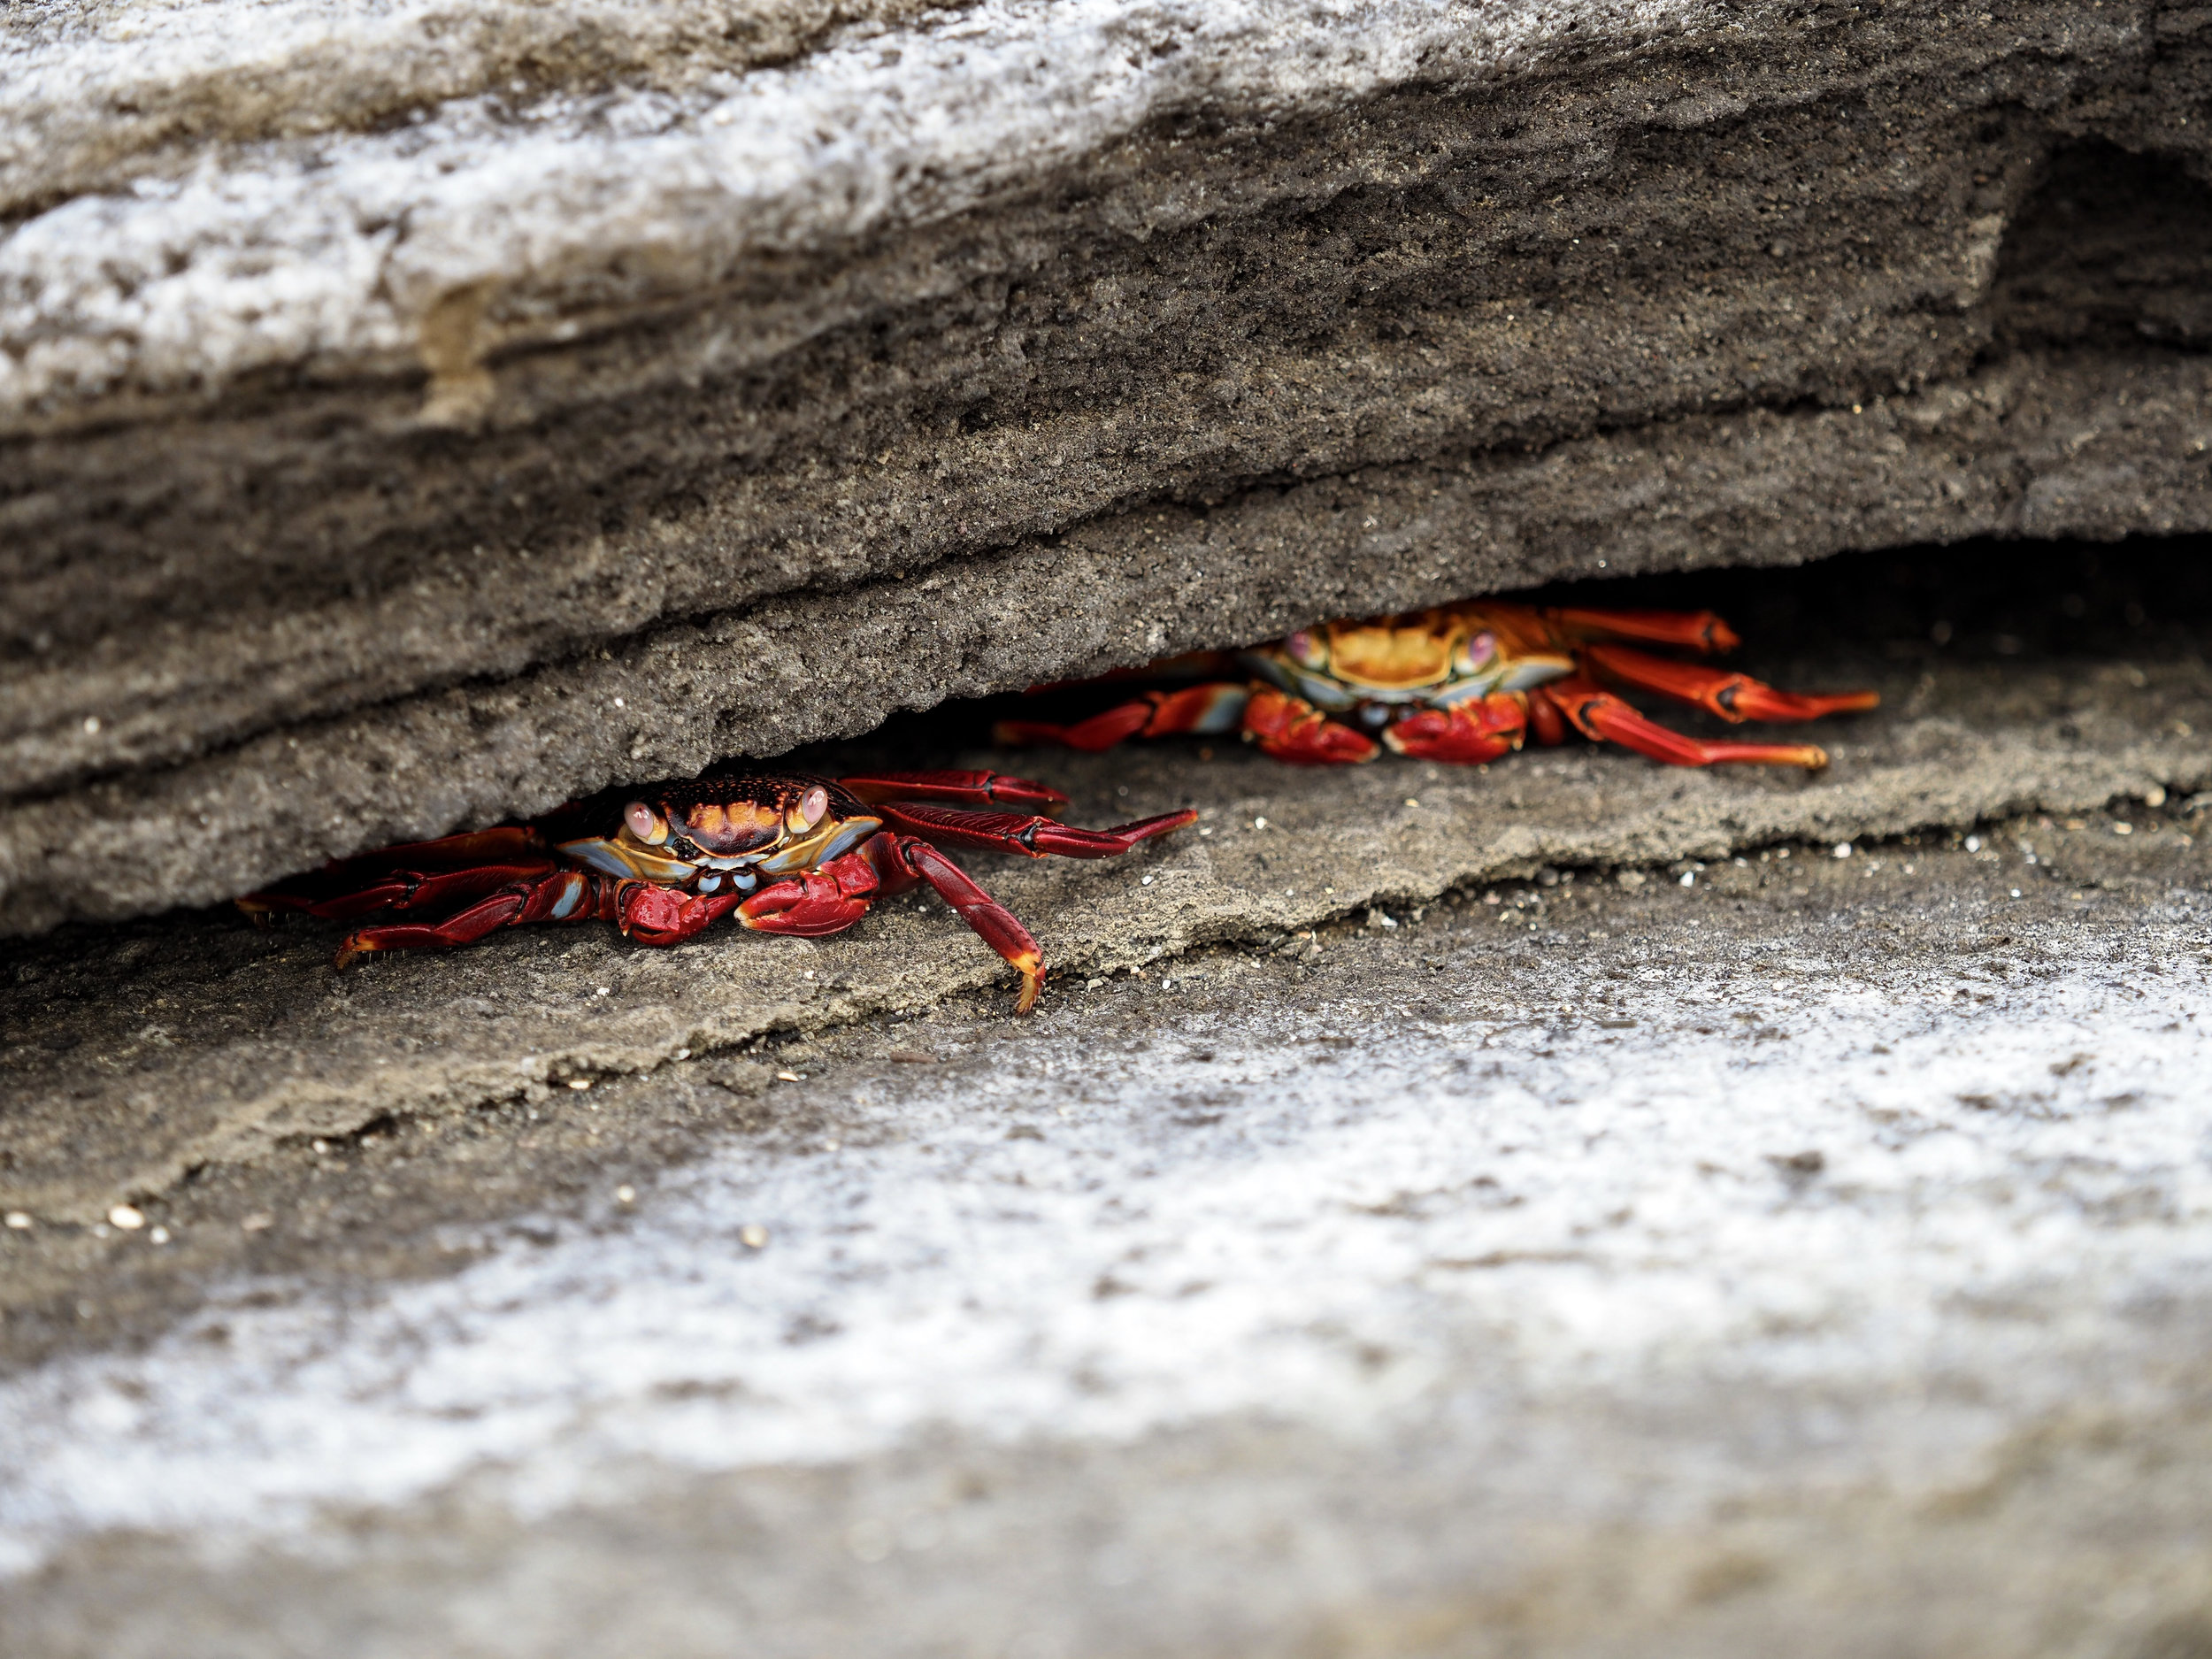  Sally Lightfoot crabs, Sullivan Bay 